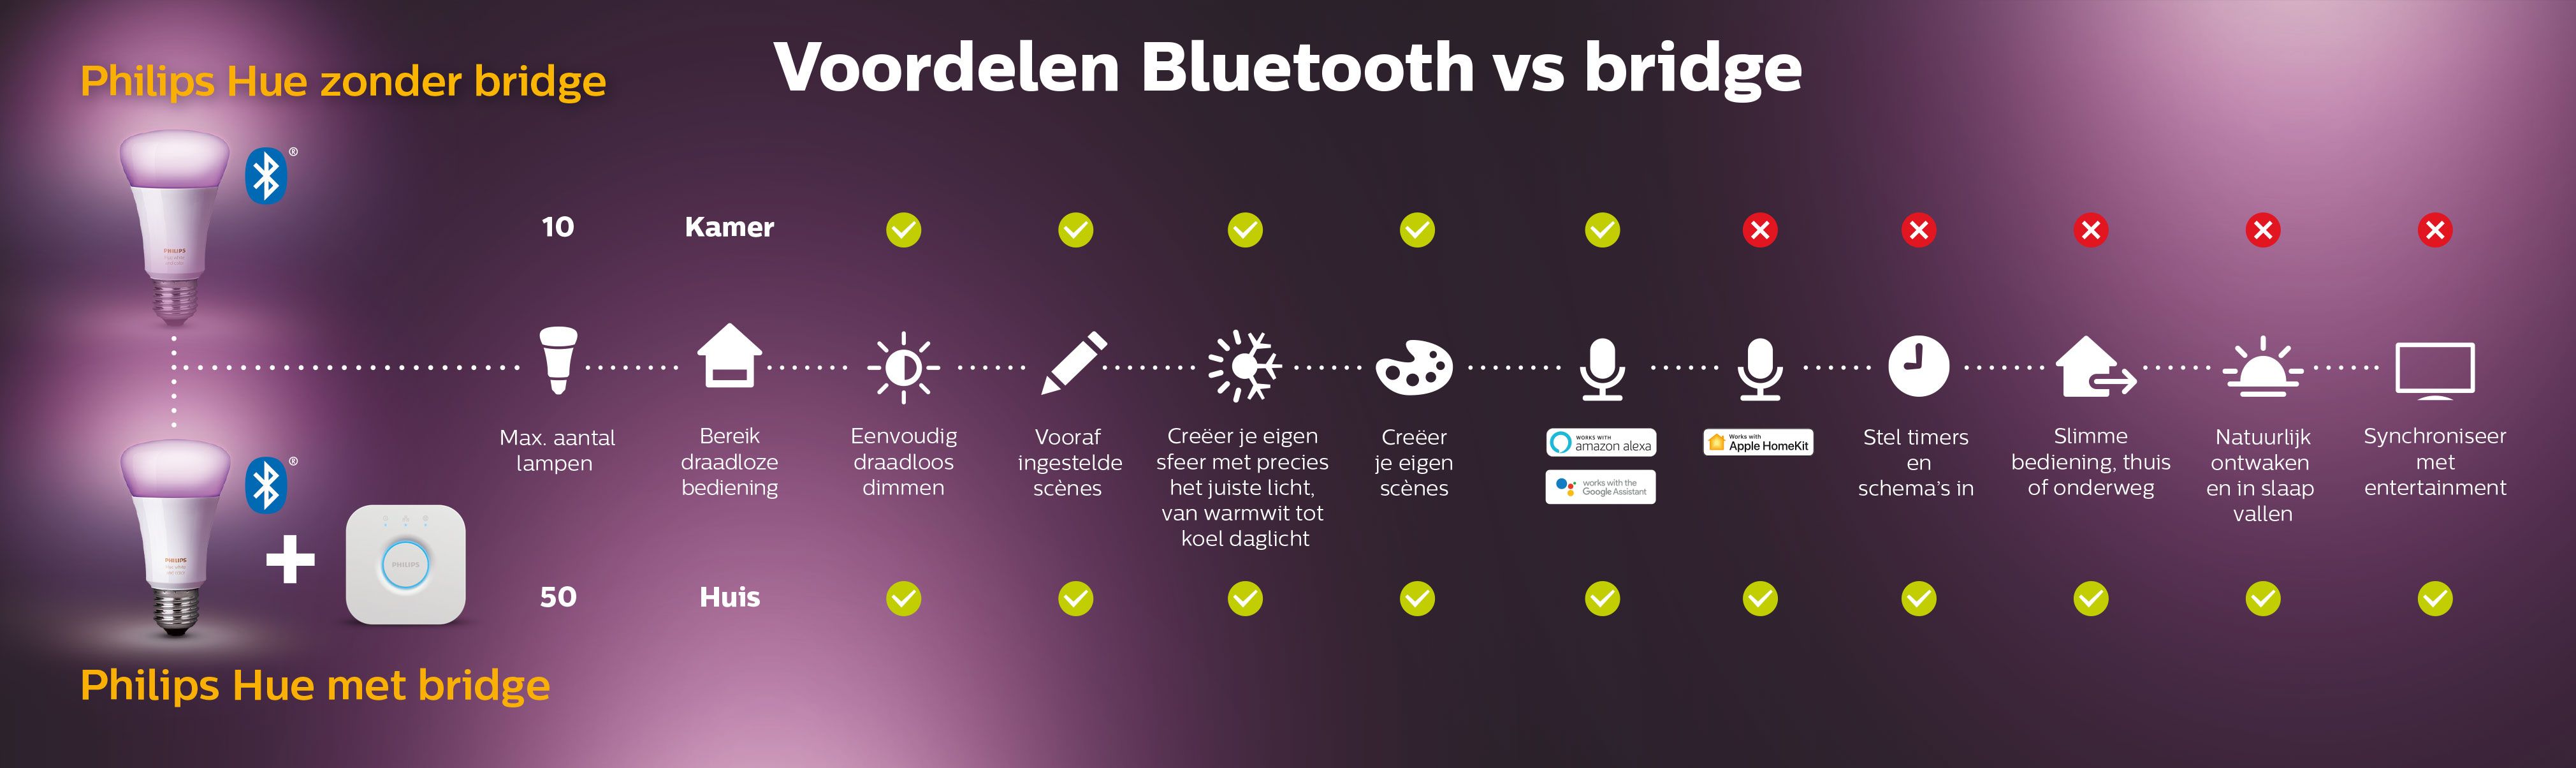 Voordelen Bluetooth